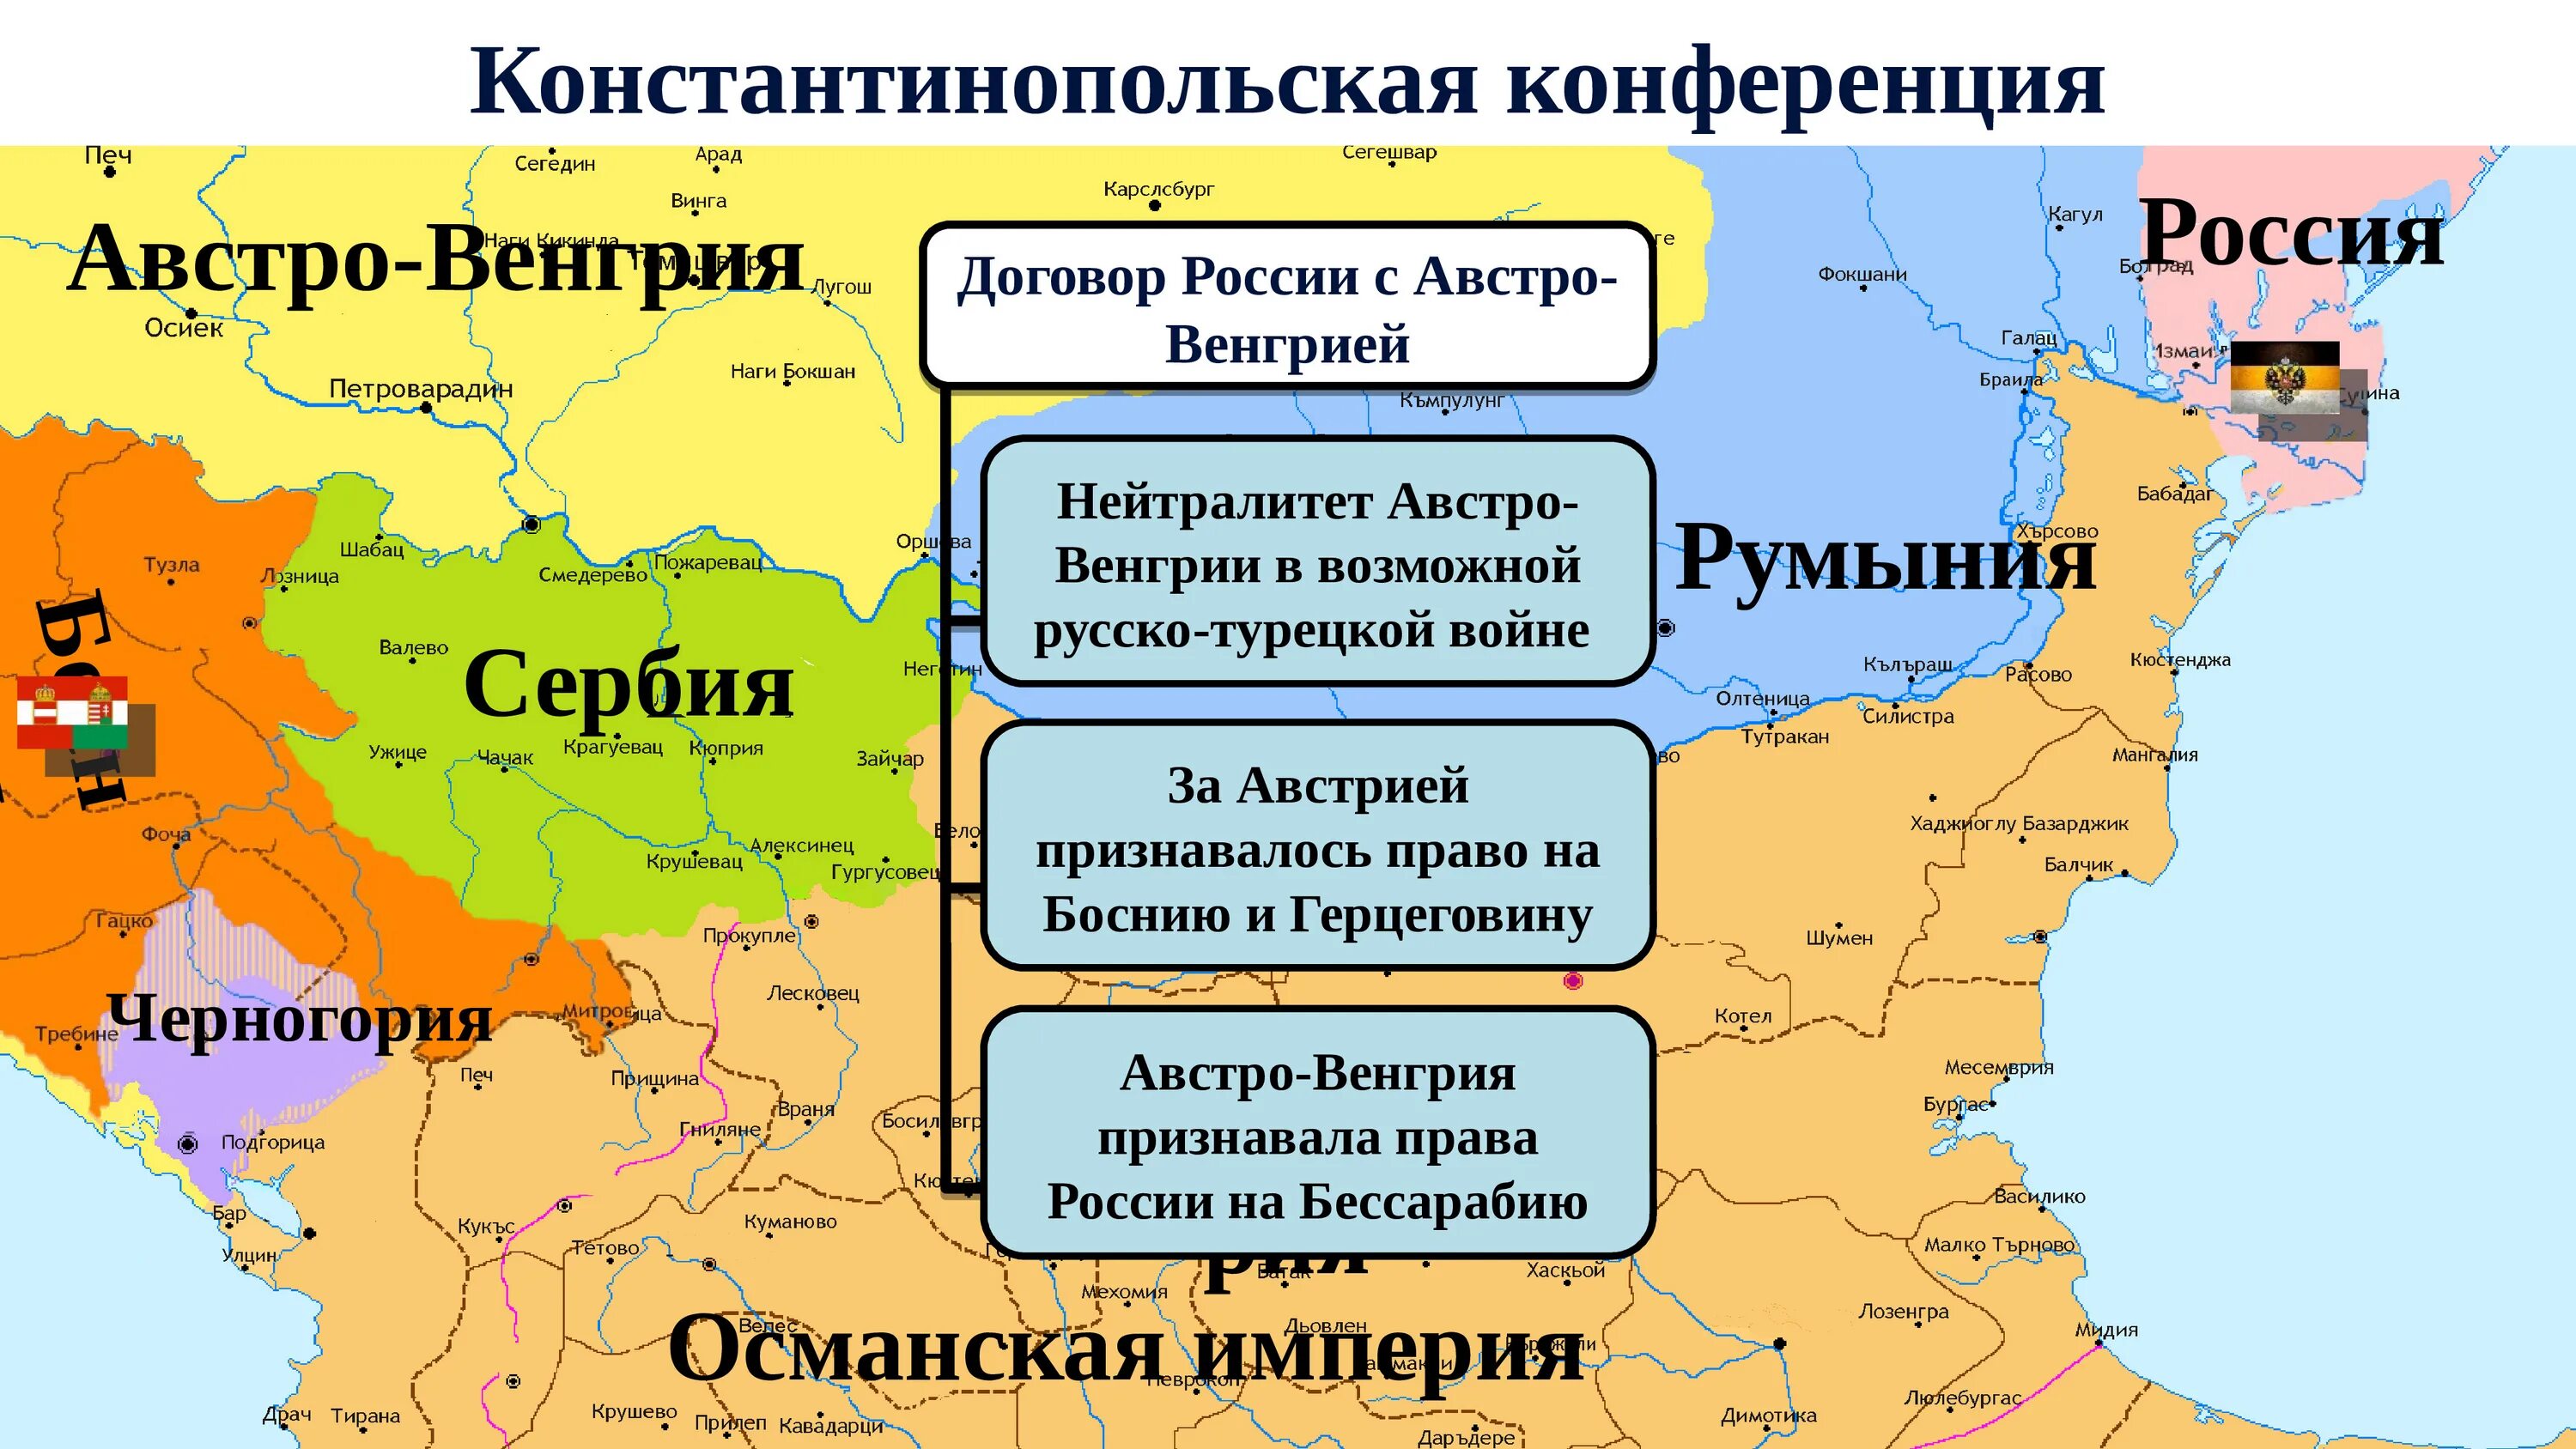 Договор 1700. Русско-турецкая 1877-1878.